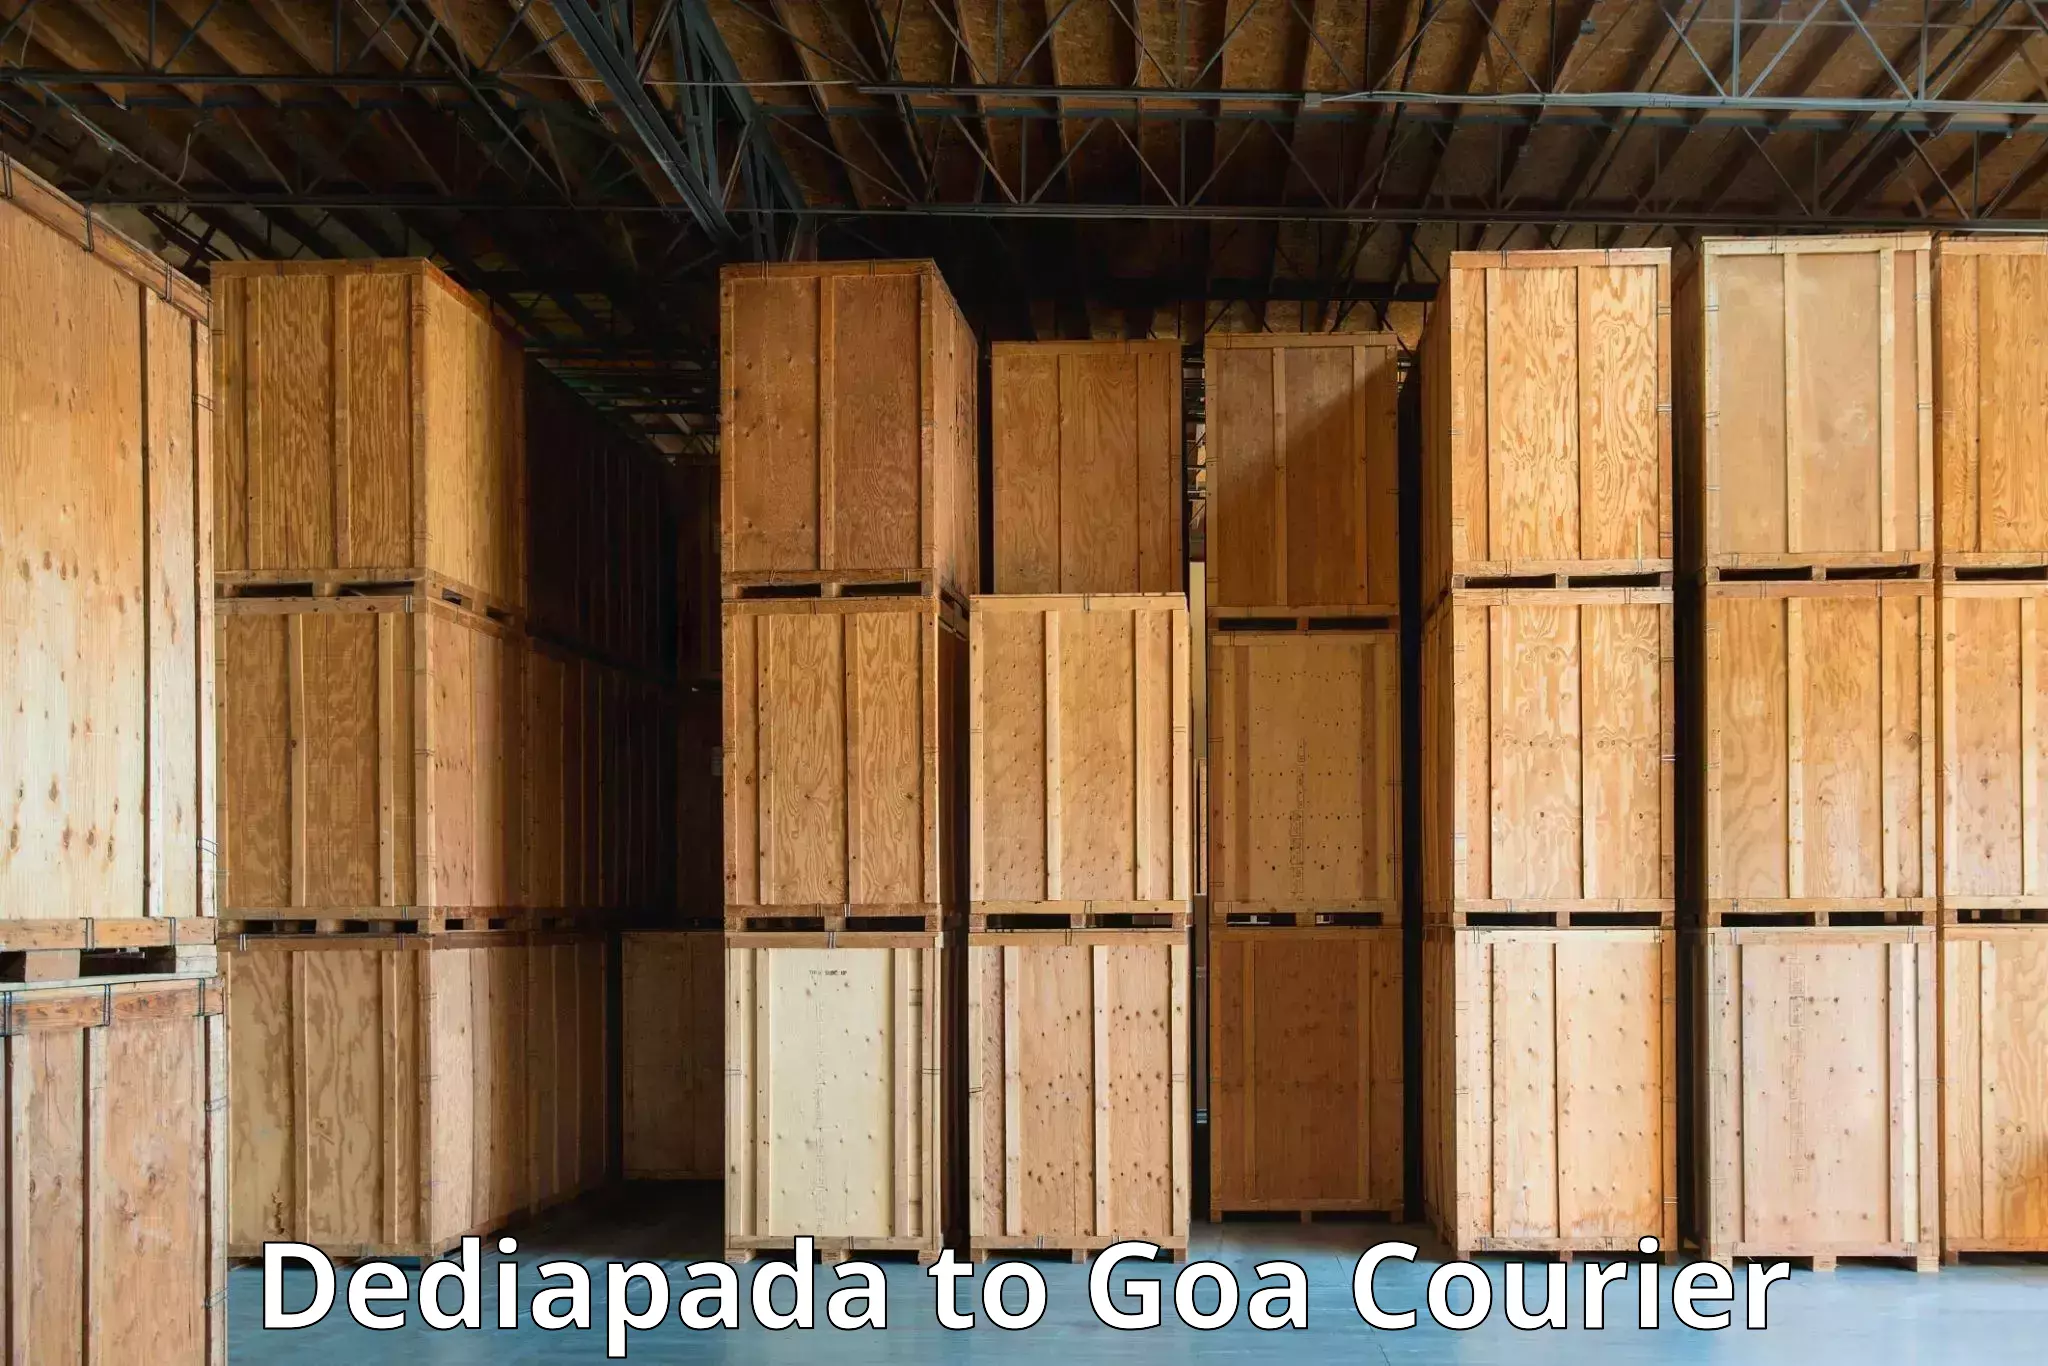 Global logistics network in Dediapada to NIT Goa